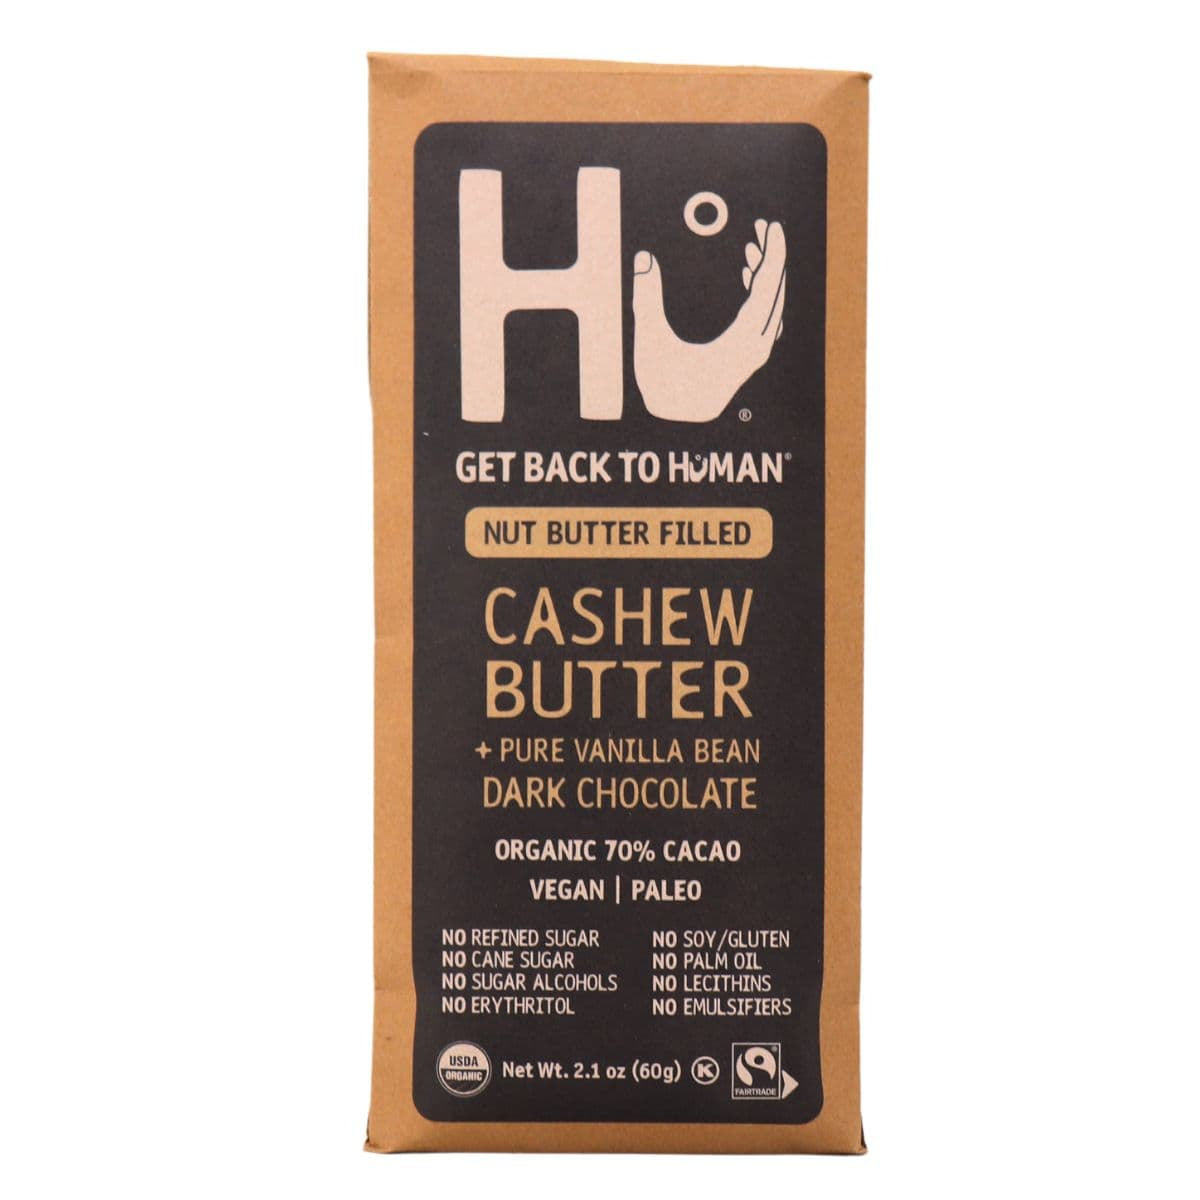 Cashew Butter and Pure Vanilla Bean Dark Chocolate by Hu, 60g